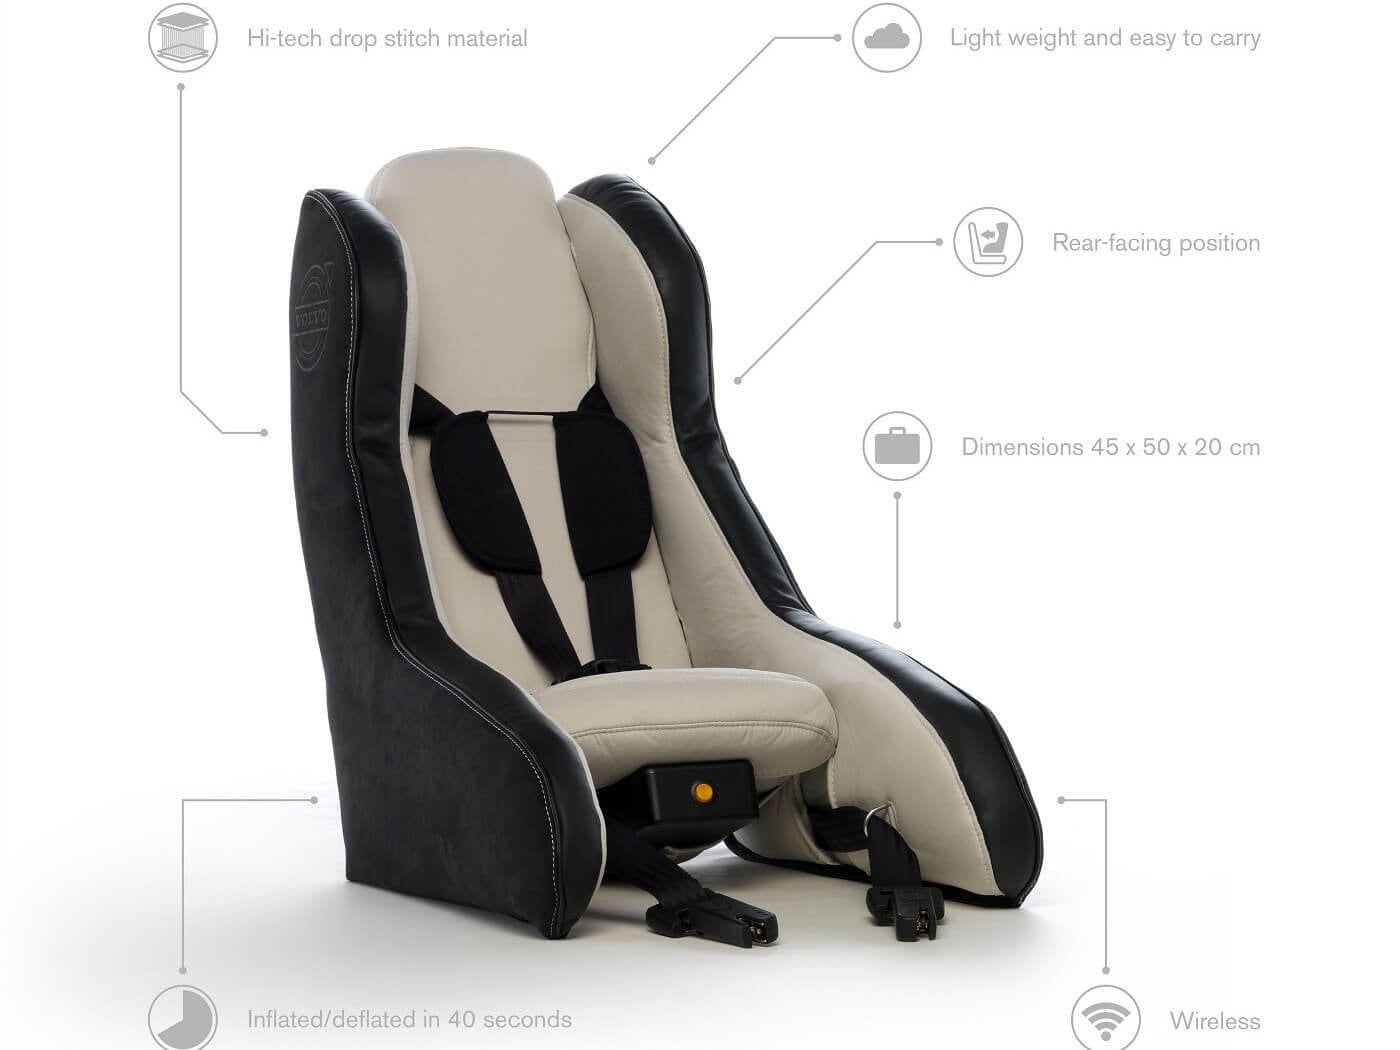 O primeiro conceito de cadeira de segurança infantil insuflável do mundo pela mão da Volvo Cars.